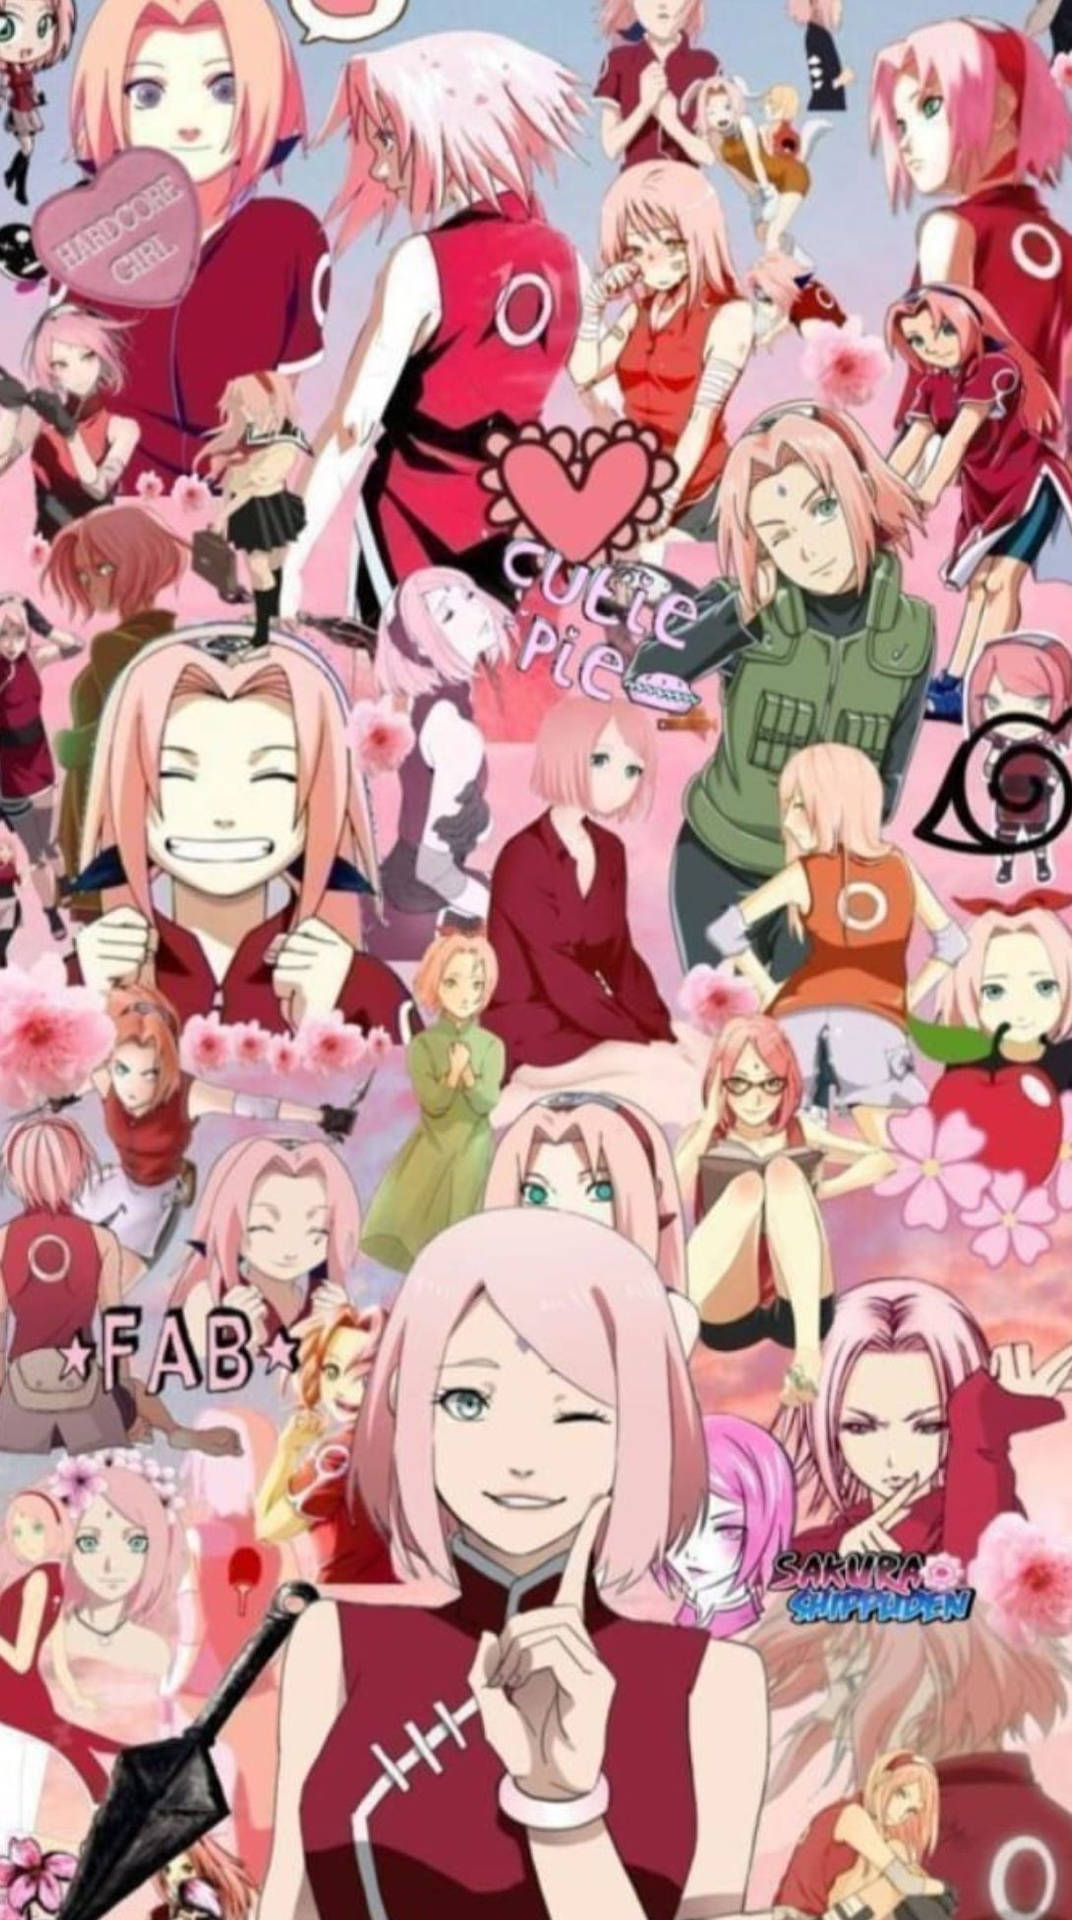 Naruto Anime Haruno Sakura Kollage Tapet: Et tapet sammensat af mange billeder af Haruno Sakura fra anime-serien Naruto. Wallpaper